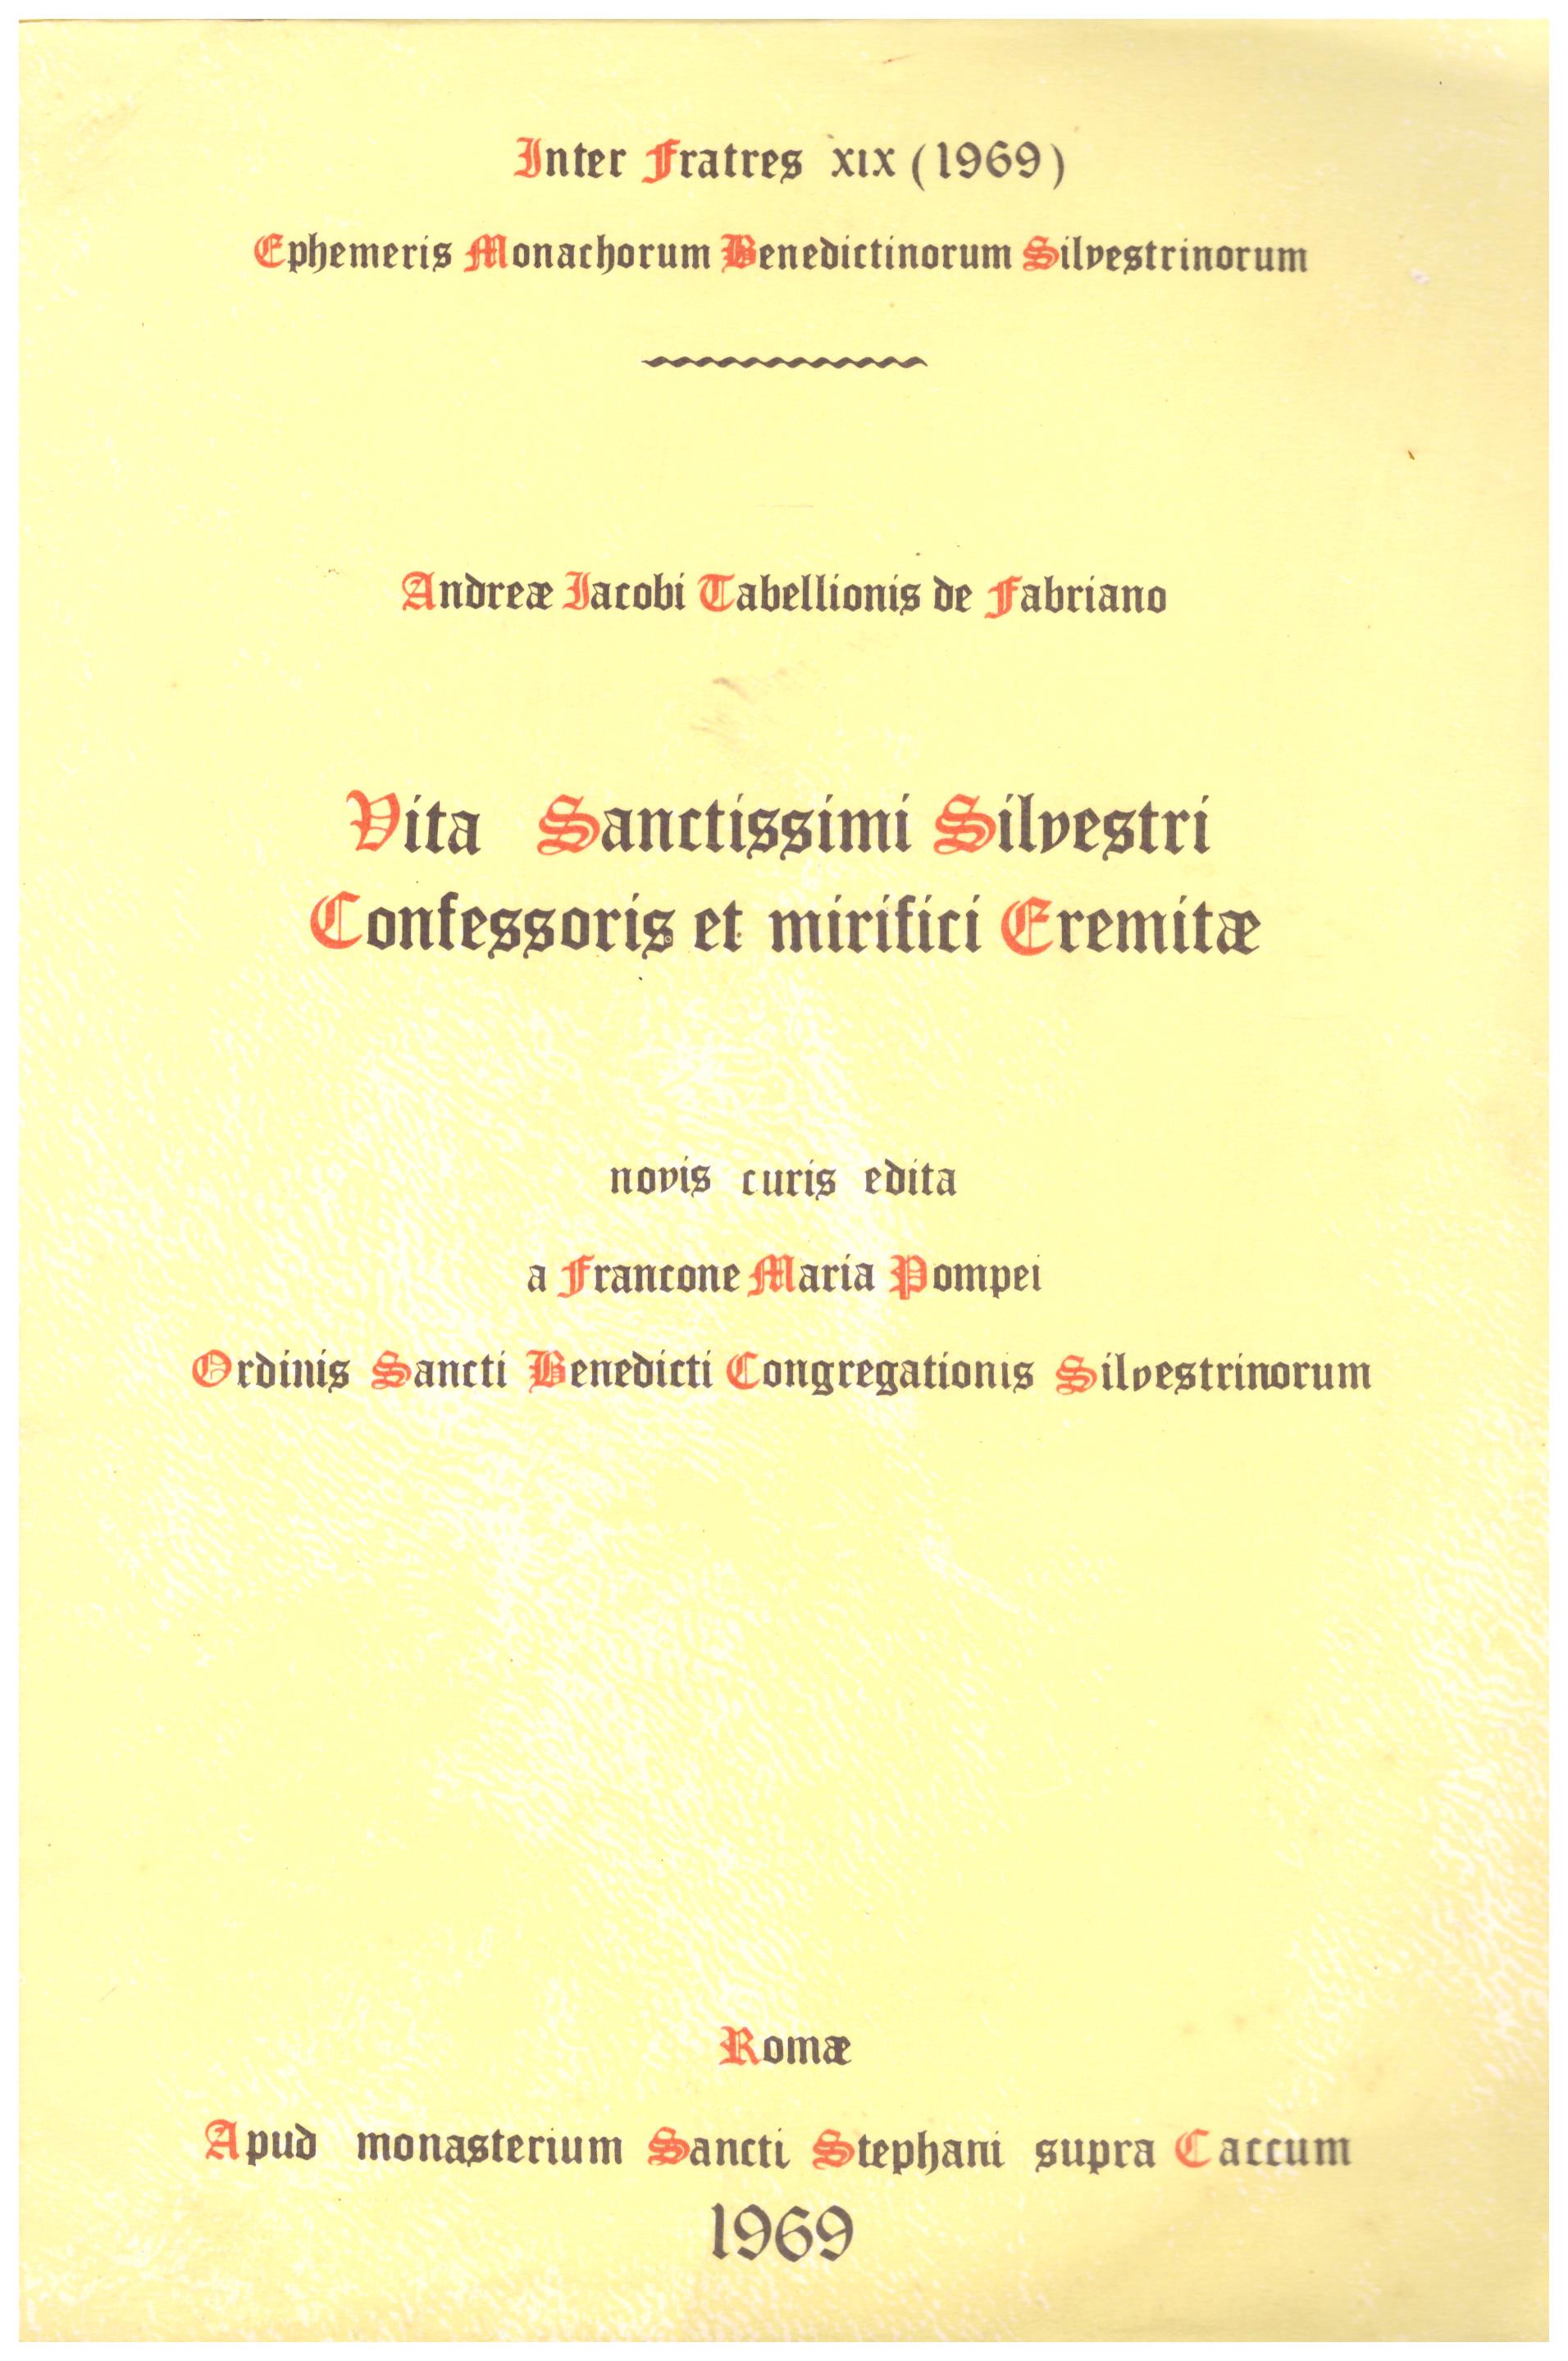 Vita Sanctissimi Silvestri Confessoris et Mirifici Eremitae